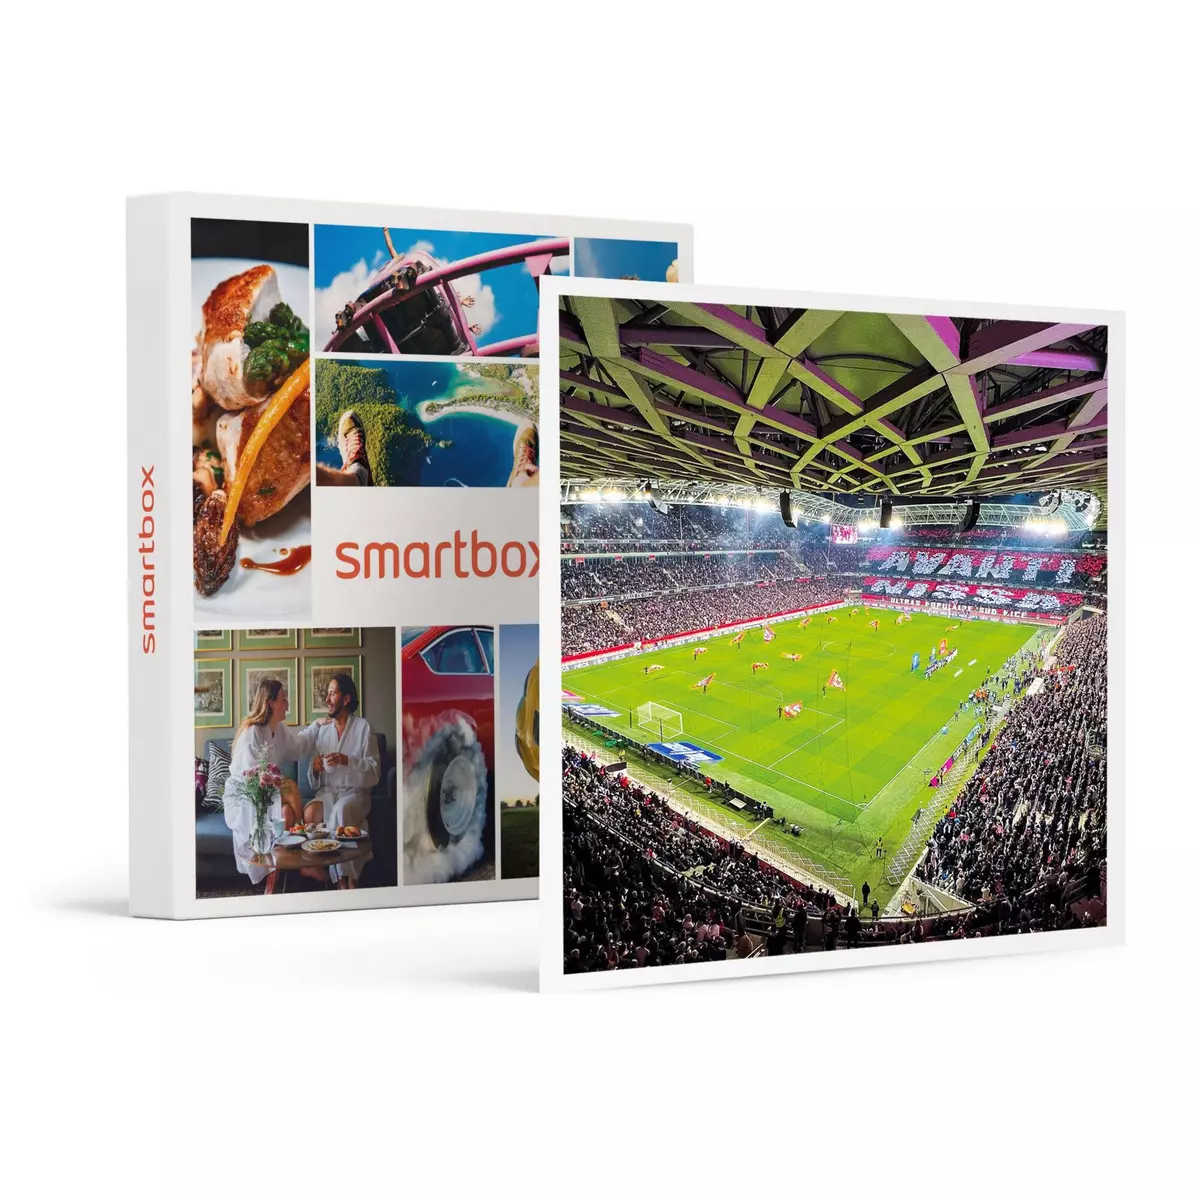 Smartbox Coffret Or : 99,99 € à valoir sur la billetterie de l'OGC Nice pour 2 personnes - Coffret Cadeau Sport & Aventure